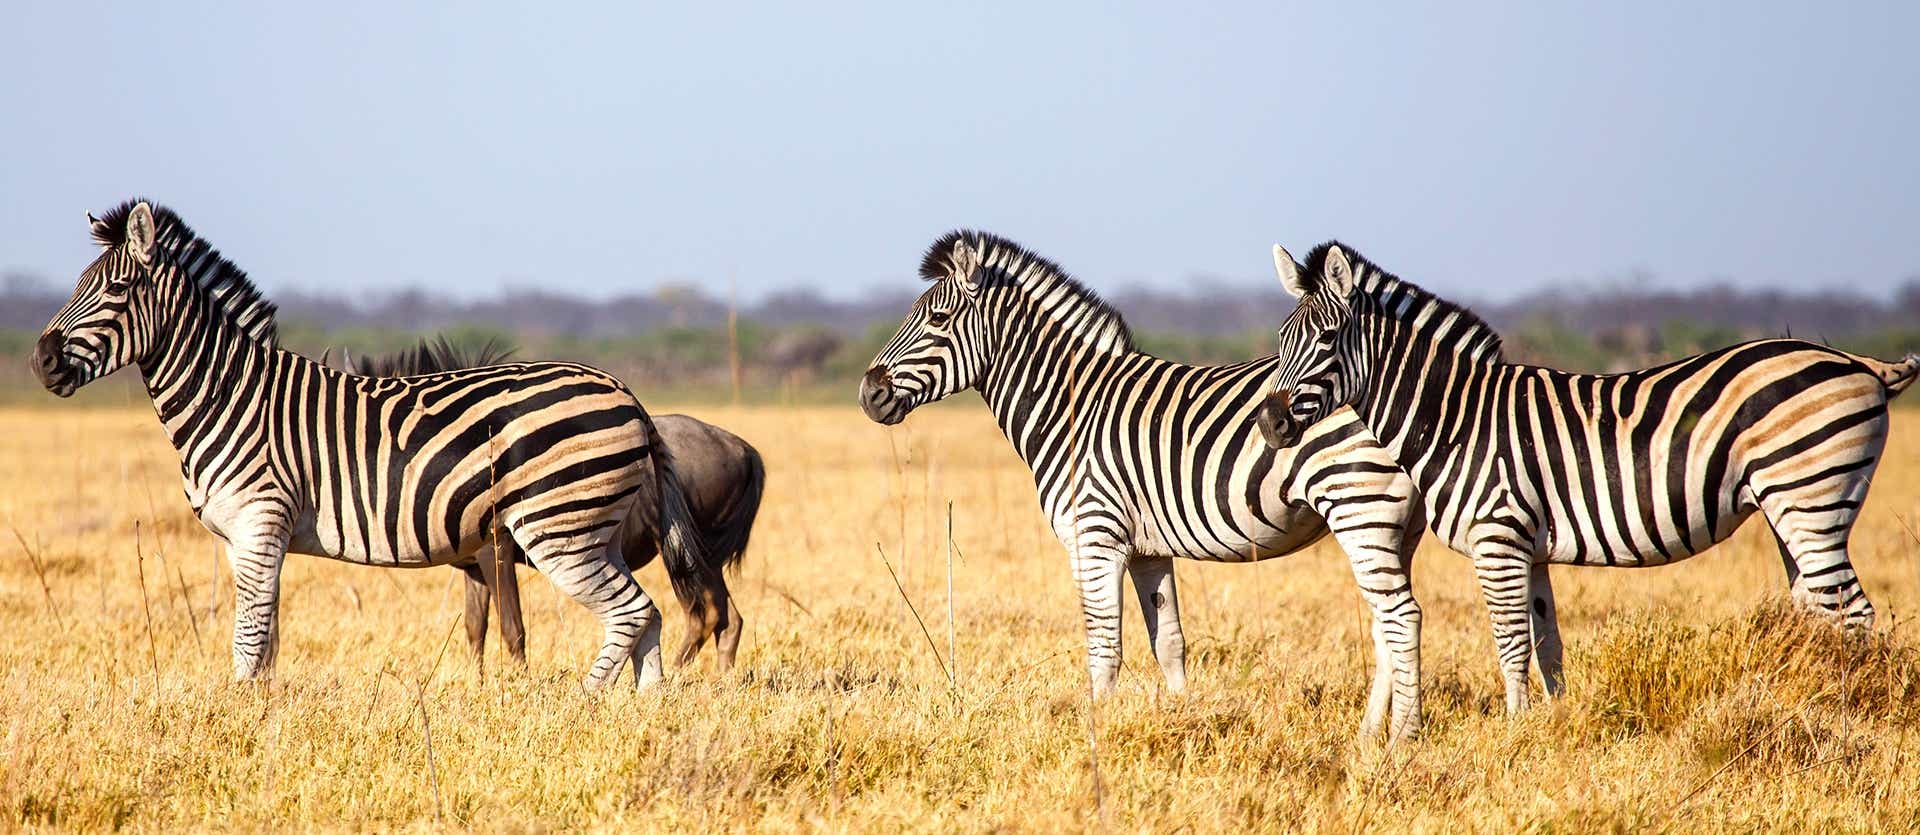 Zebras <span class="iconos separador"></span> Chobe National Park <span class="iconos separador"></span> Bostwana 